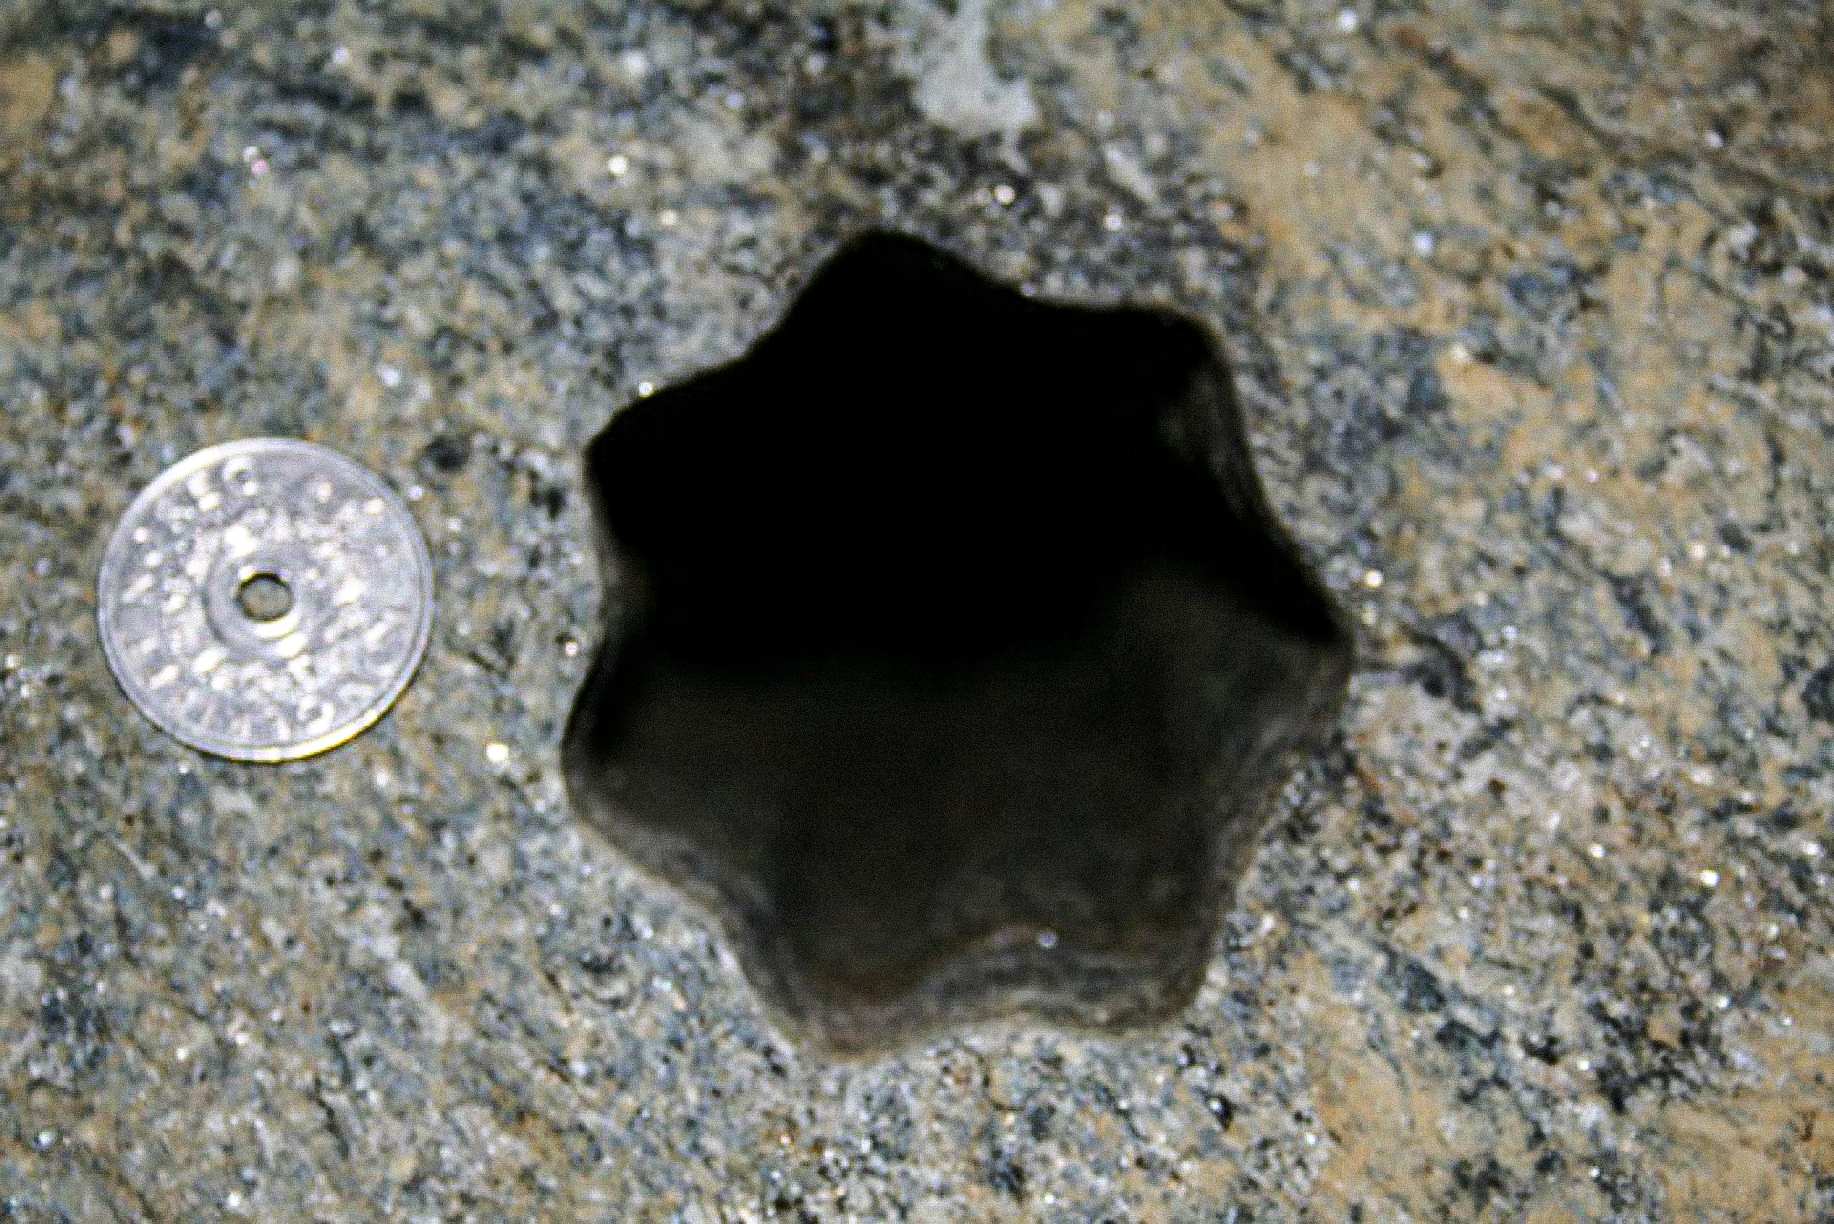 이 별 모양의 구멍(30면이 있음)은 2007년 5월 25일 금요일 노르웨이 볼다에서 계약업체에 의해 발견되었습니다. 노르웨이 65크로네 동전의 지름은 70mm입니다. 구멍의 직경은 약 XNUMX~XNUMXmm입니다.